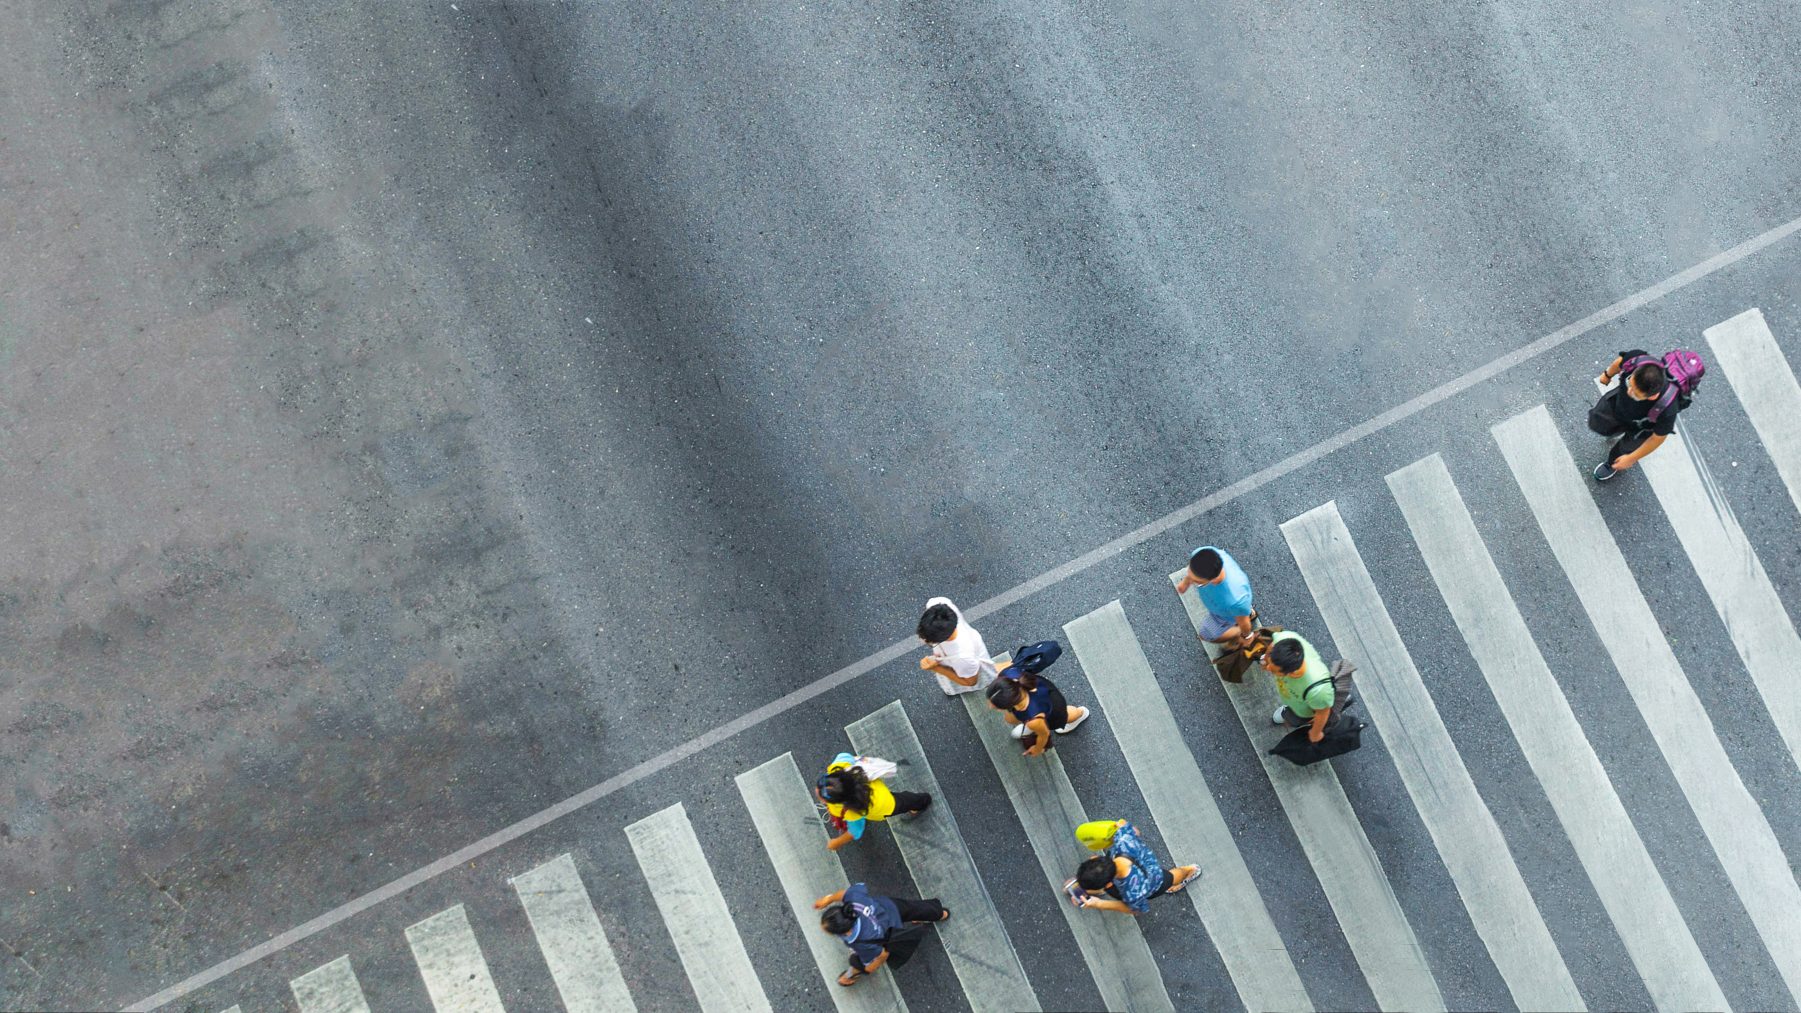 An overhead image of people walking across a street crossing